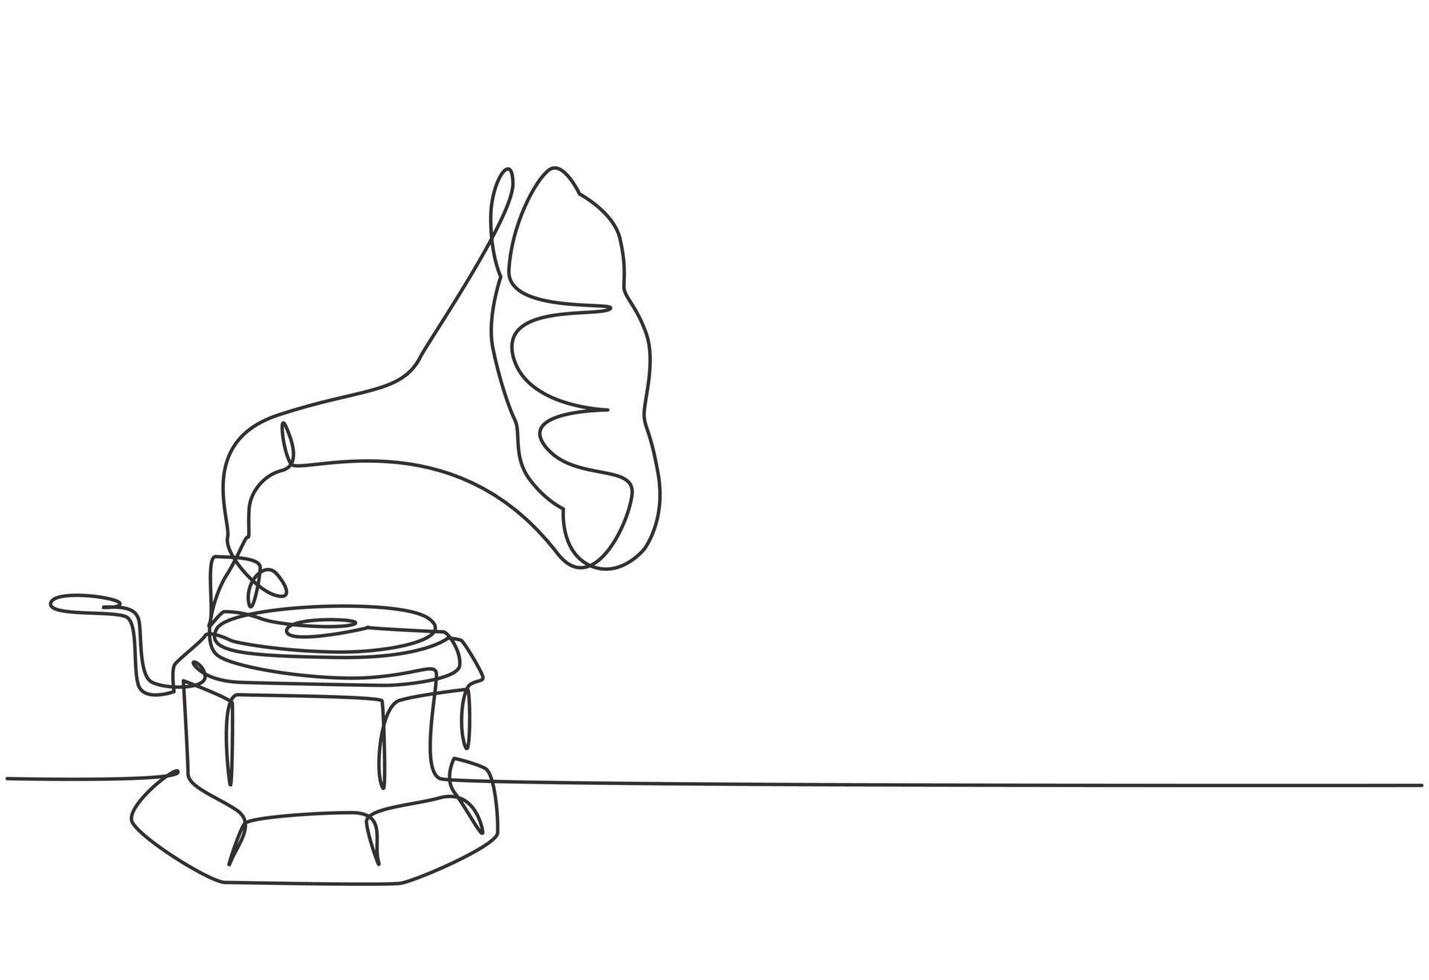 enkele doorlopende lijntekening van oude retro analoge vinyl grammofoon met houten tafeldoos. nostalgisch vintage klassiek muziekspelerconcept. muziekinstrument één lijn tekenen ontwerp vectorillustratie vector